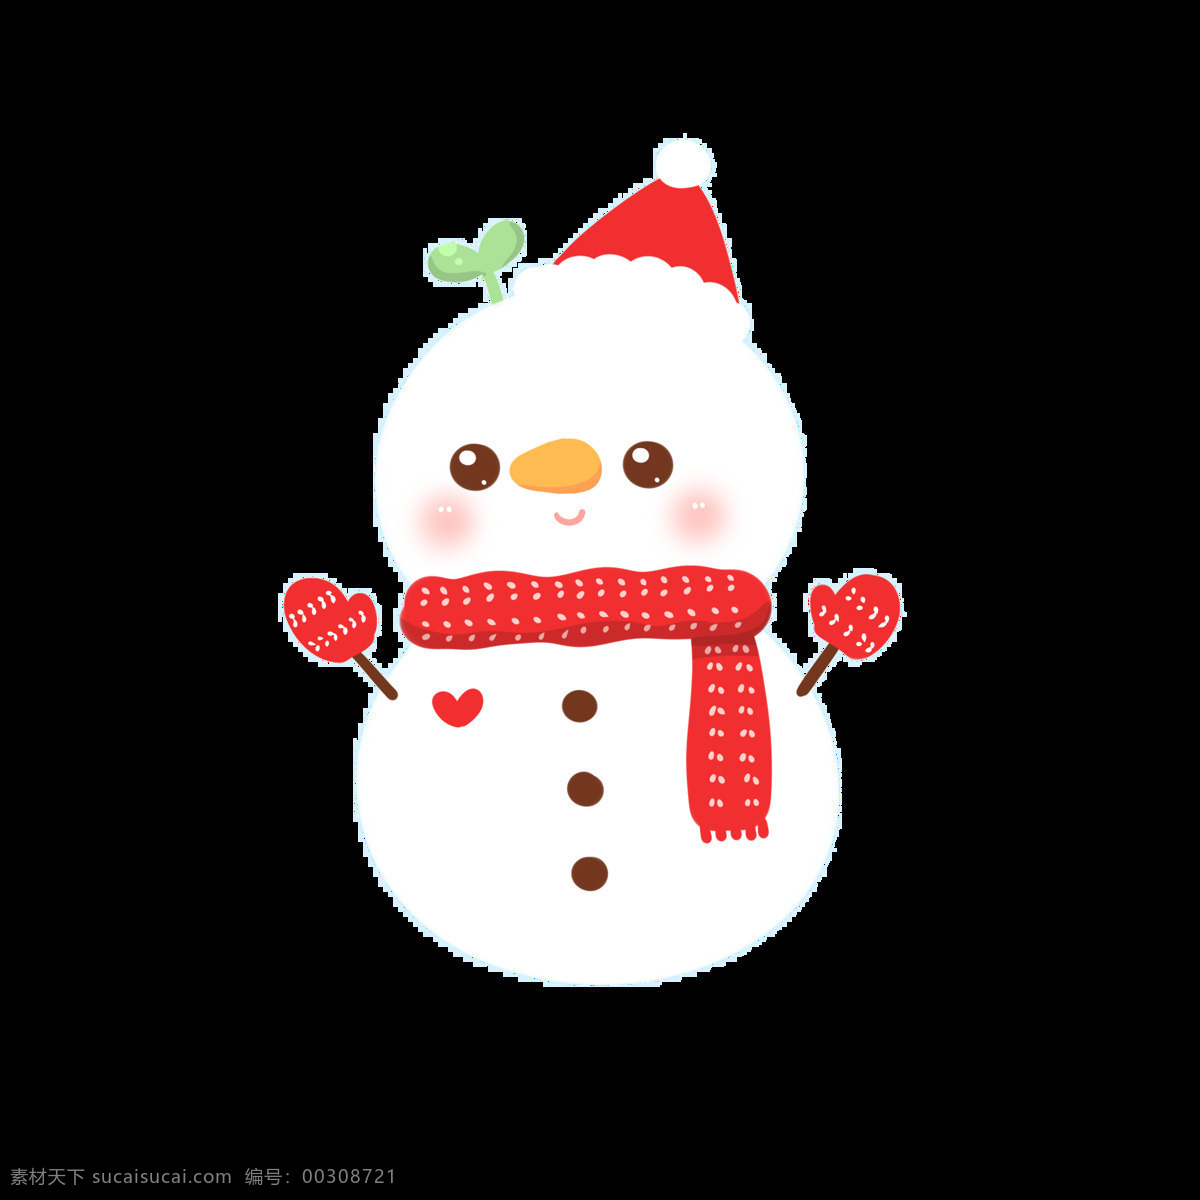 可爱 圣诞 雪人 元素 christmas merry 堆雪人 卡通雪人 设计素材 圣诞素材 圣诞雪人 圣诞元素下载 新年快乐 雪人png 雪人元素